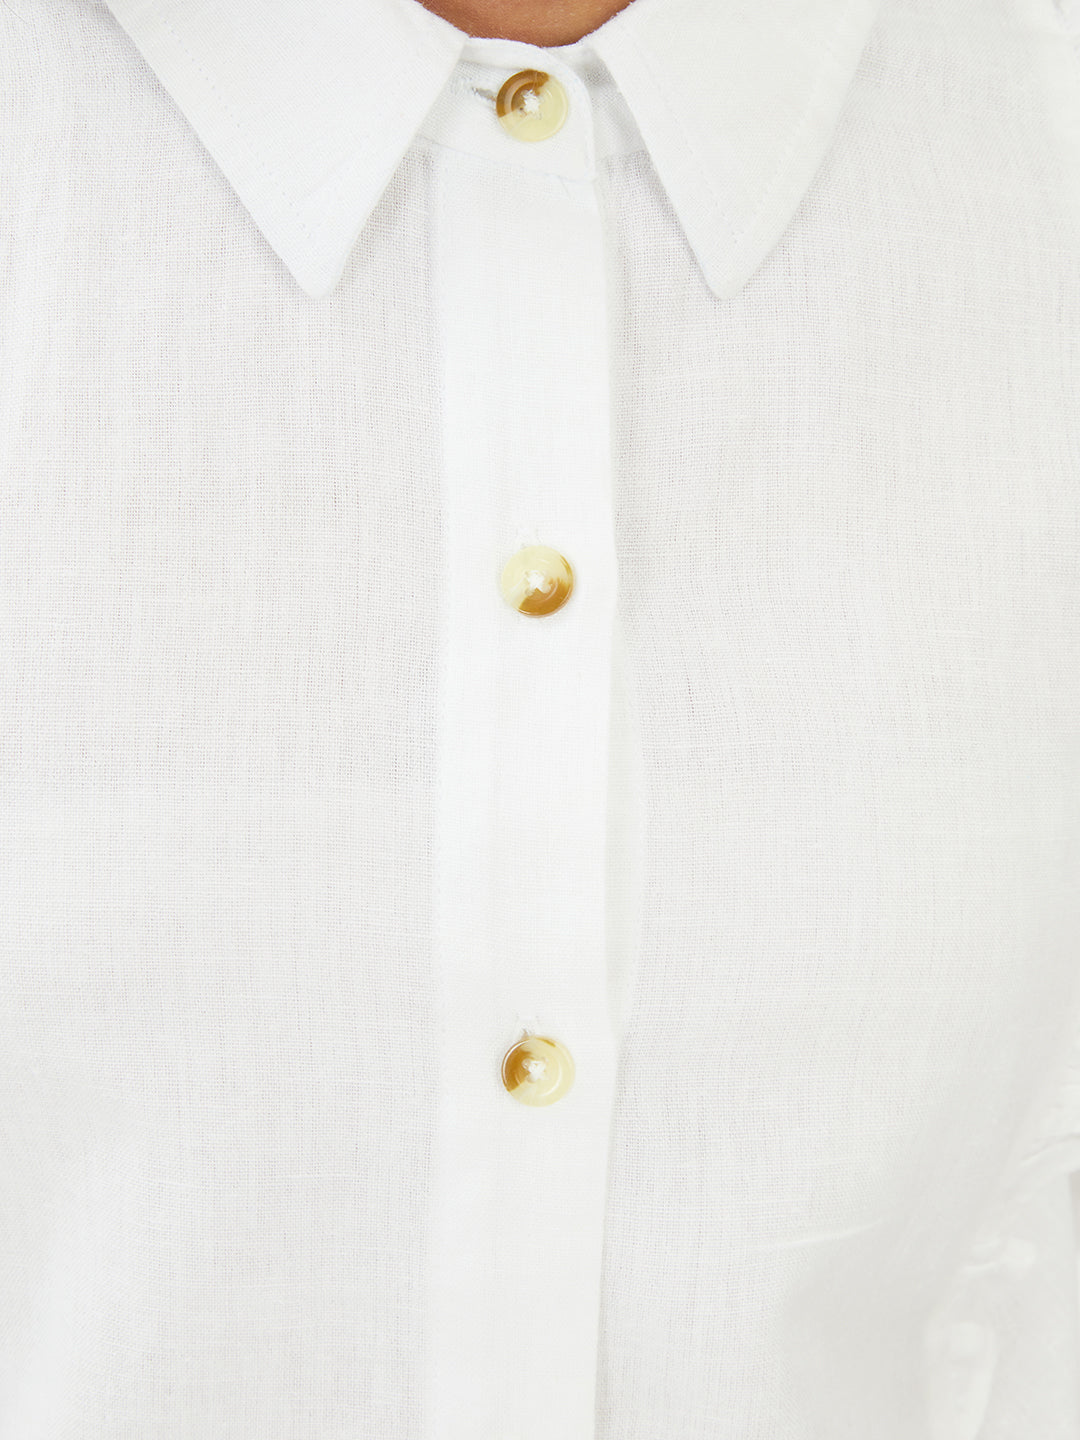 Olele® Girls Regina Full Sleeve Cotton Linen Shirt - White